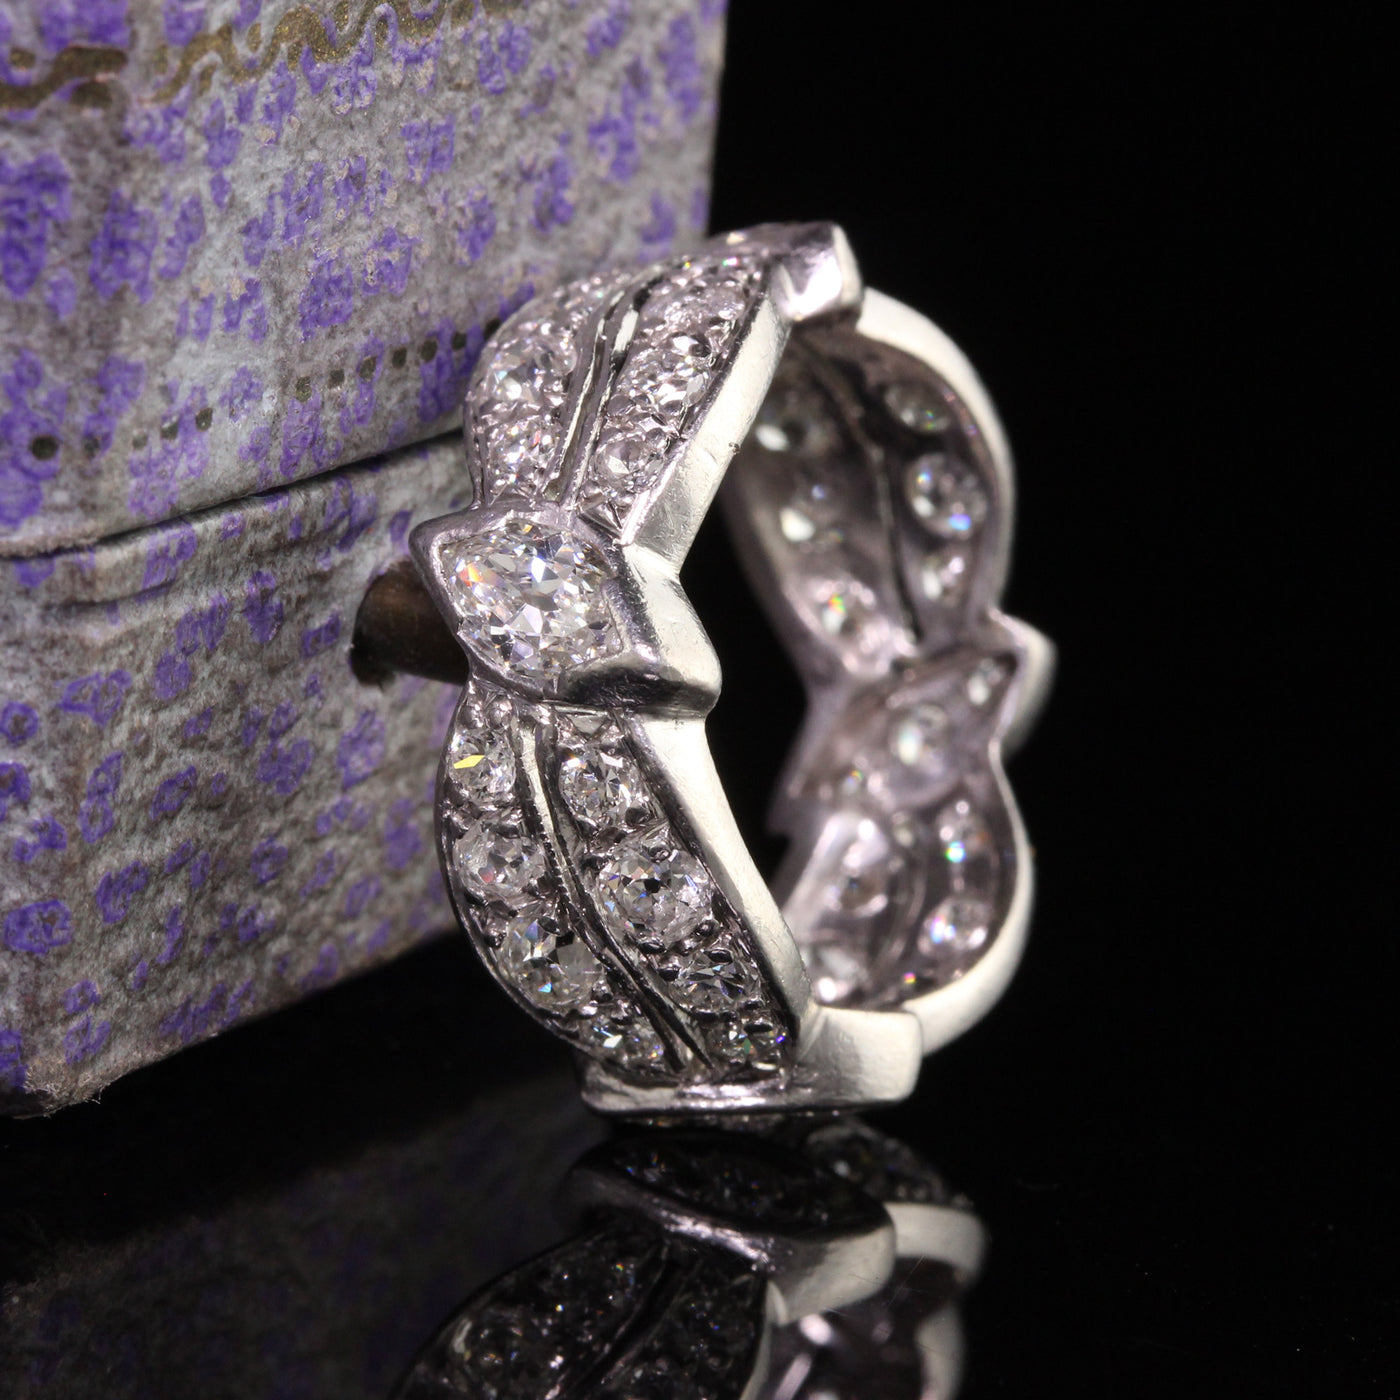 Antique Art Deco Platinum Old European Marquise Diamond Eternity Ring - Size 6 3/4